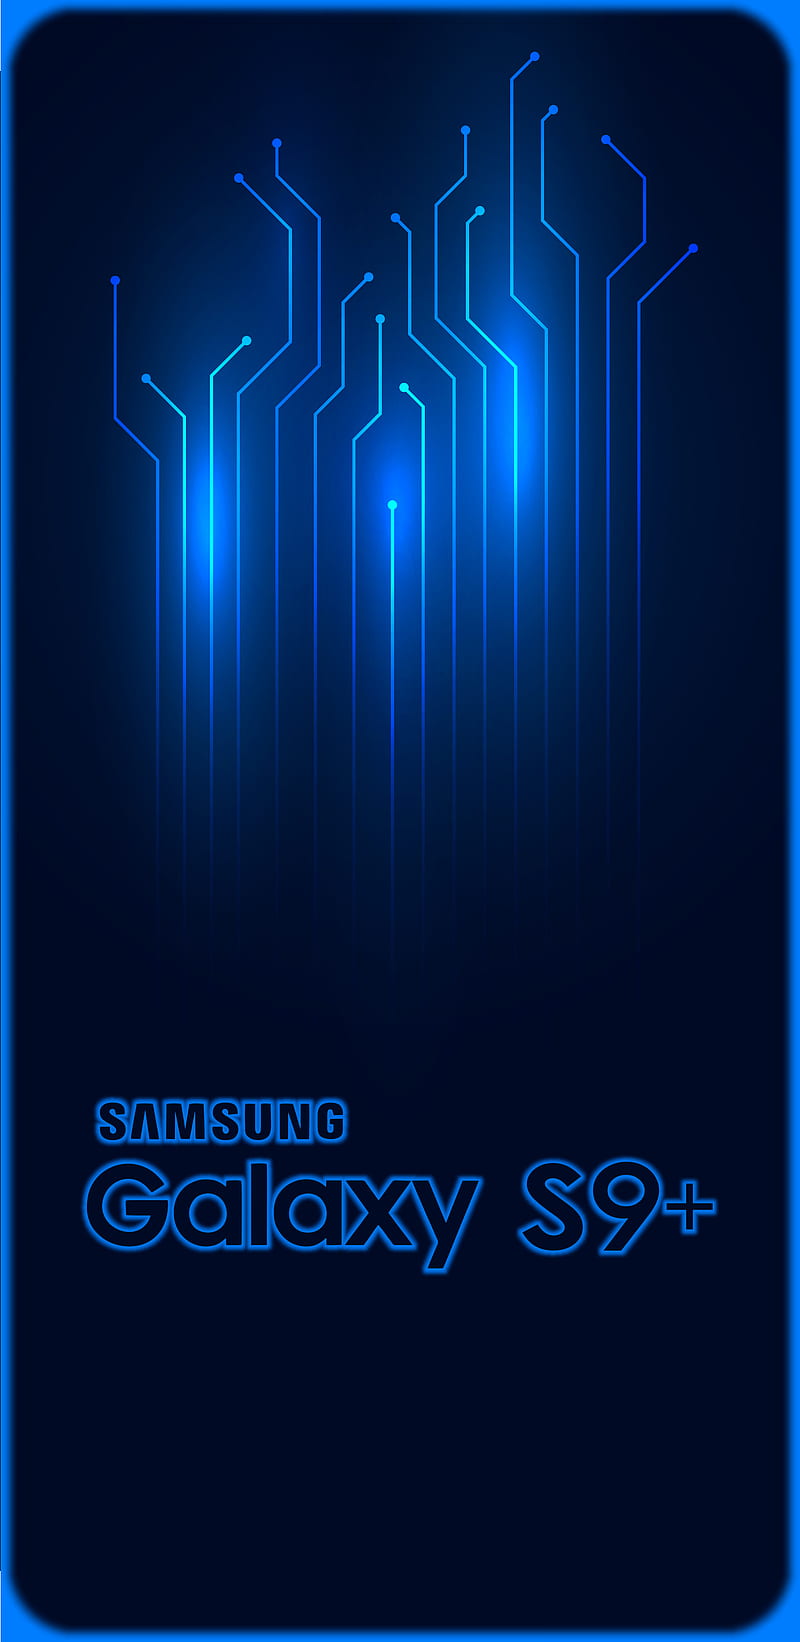 Bộ tuyển tập hình nền SamSung Galaxy S9 và S9 plus đẹp lung linh | Hình nền,  Samsung, Hình